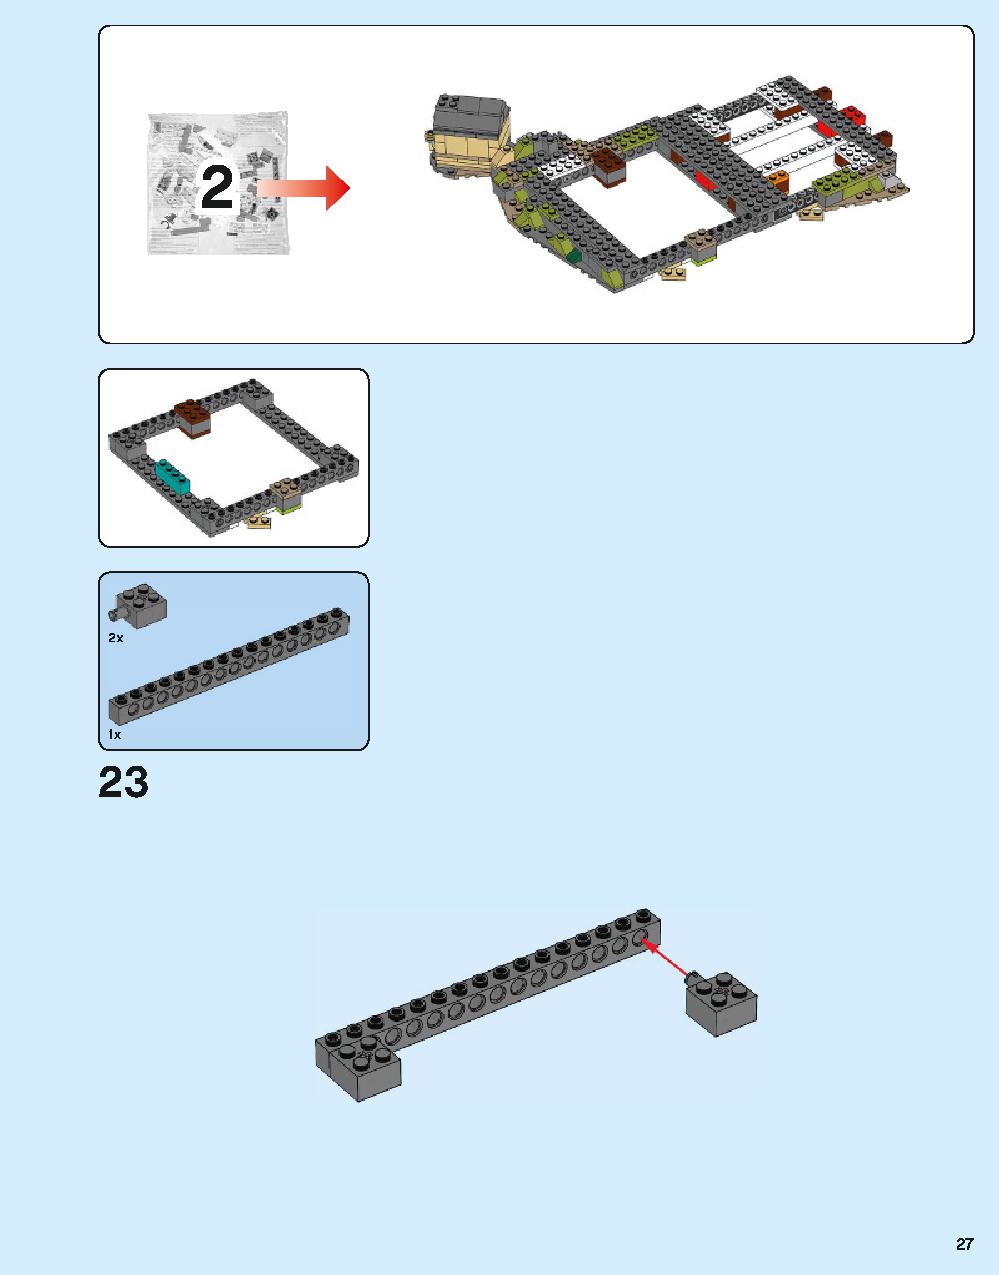 ホグワーツ城 71043 レゴの商品情報 レゴの説明書・組立方法 27 page